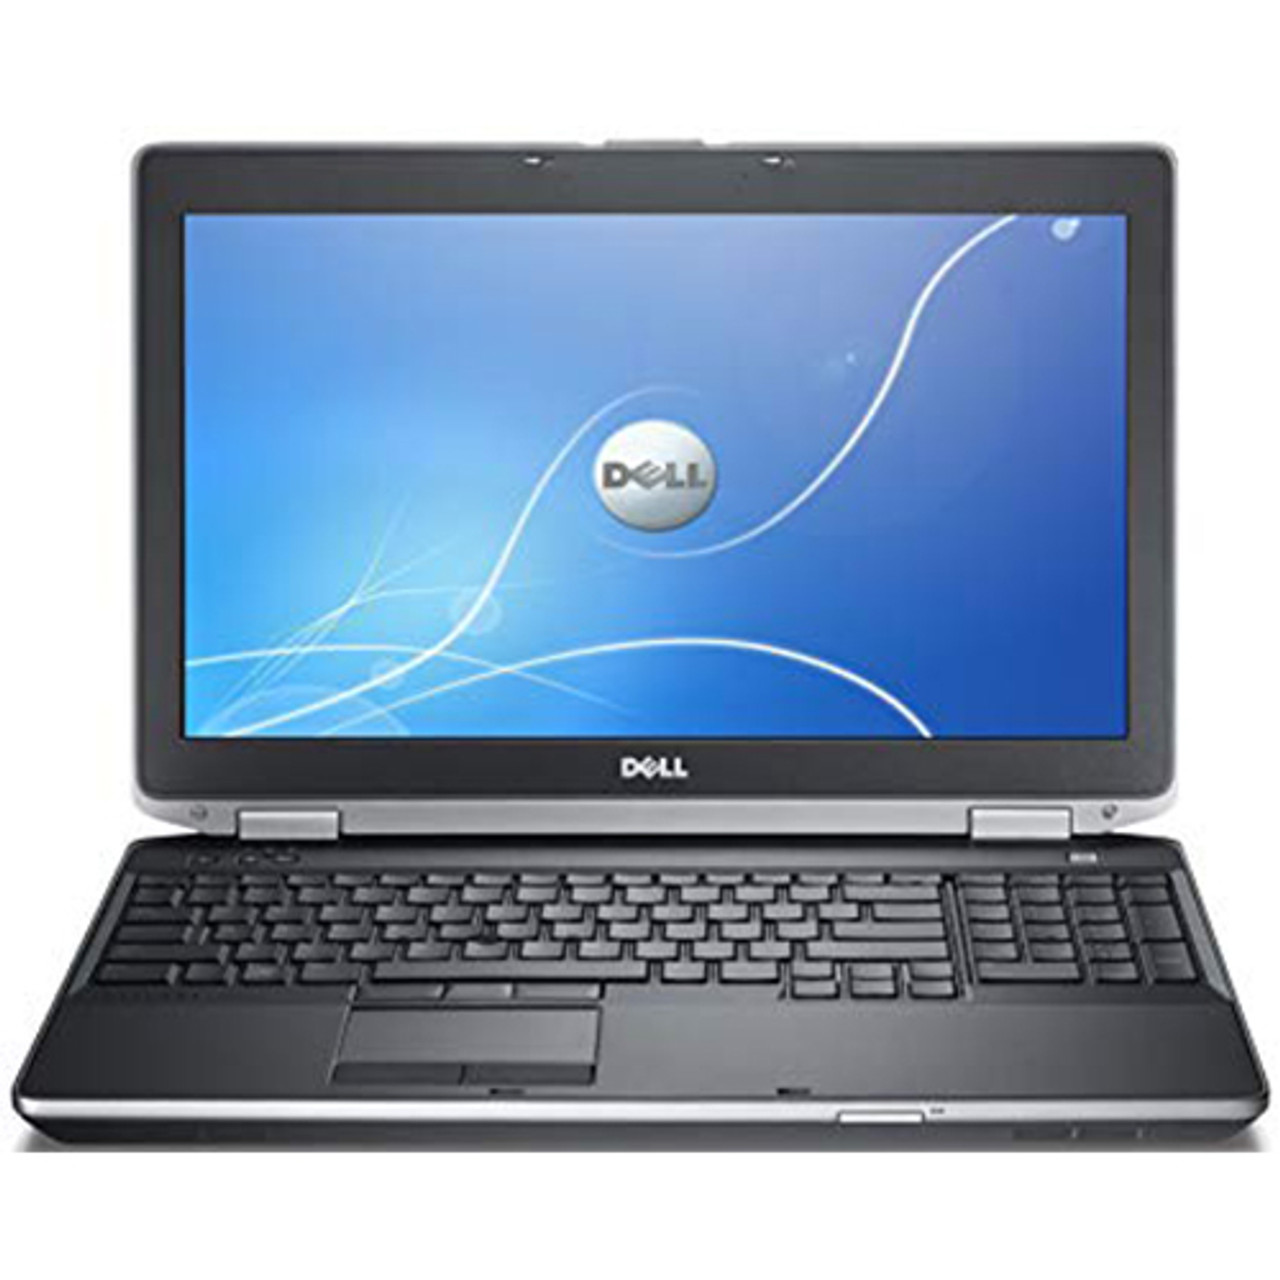 Dell Latitude E6530 Windows 10 Pro Laptop Intel i5 2.5GHz 8GB